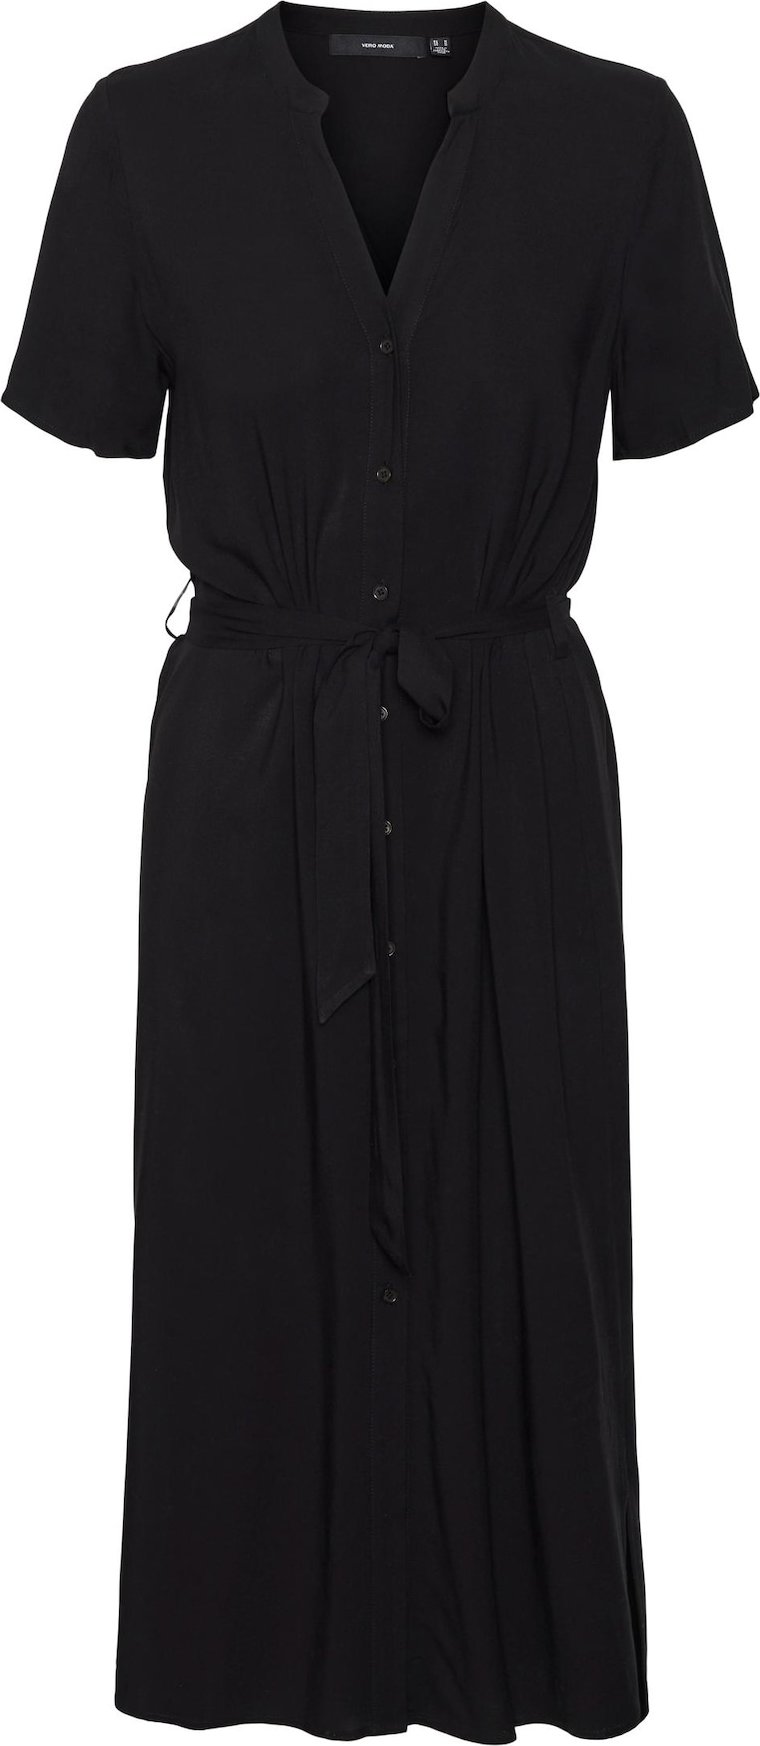 Letní šaty 'Vica' Vero Moda černá